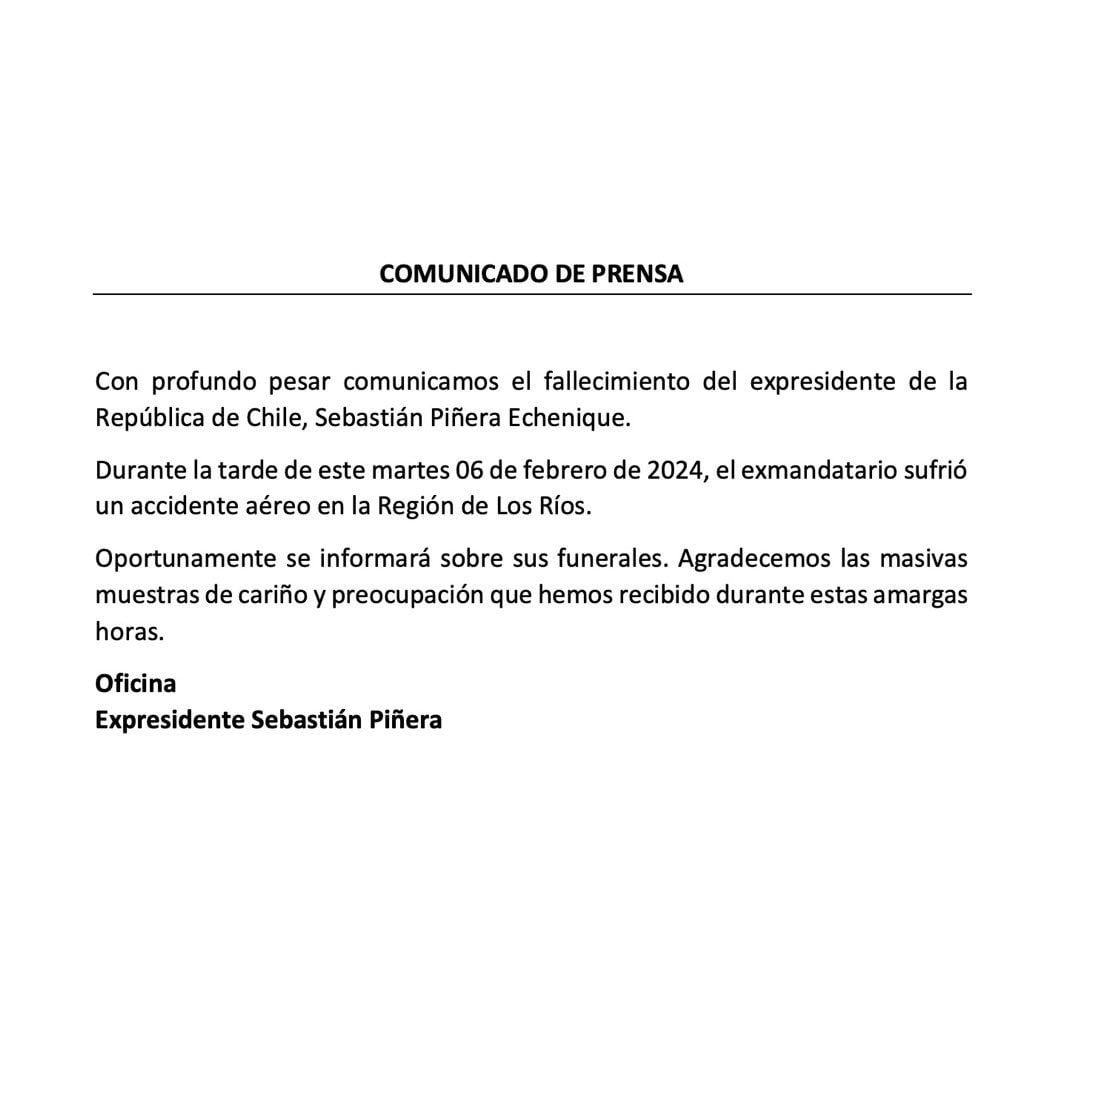 Este fue el comunicado emitido por la oficina del expresidente Piñera